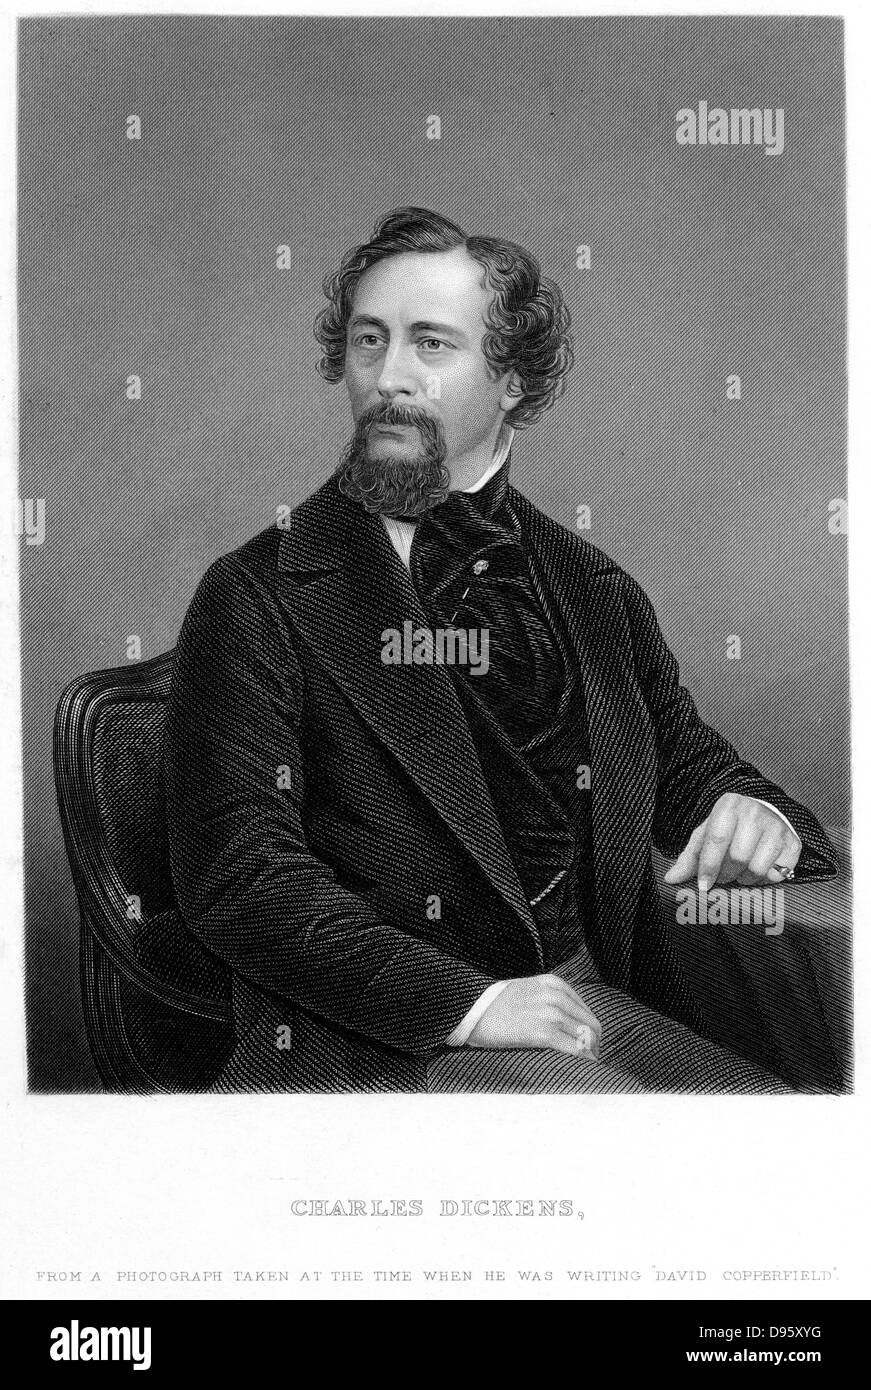 Charles Dickens (1812-70), englischer Schriftsteller und Journalist in 1862 an der Zeit, seine 'David Copperfield' wurde veröffentlicht. Gravur Stockfoto